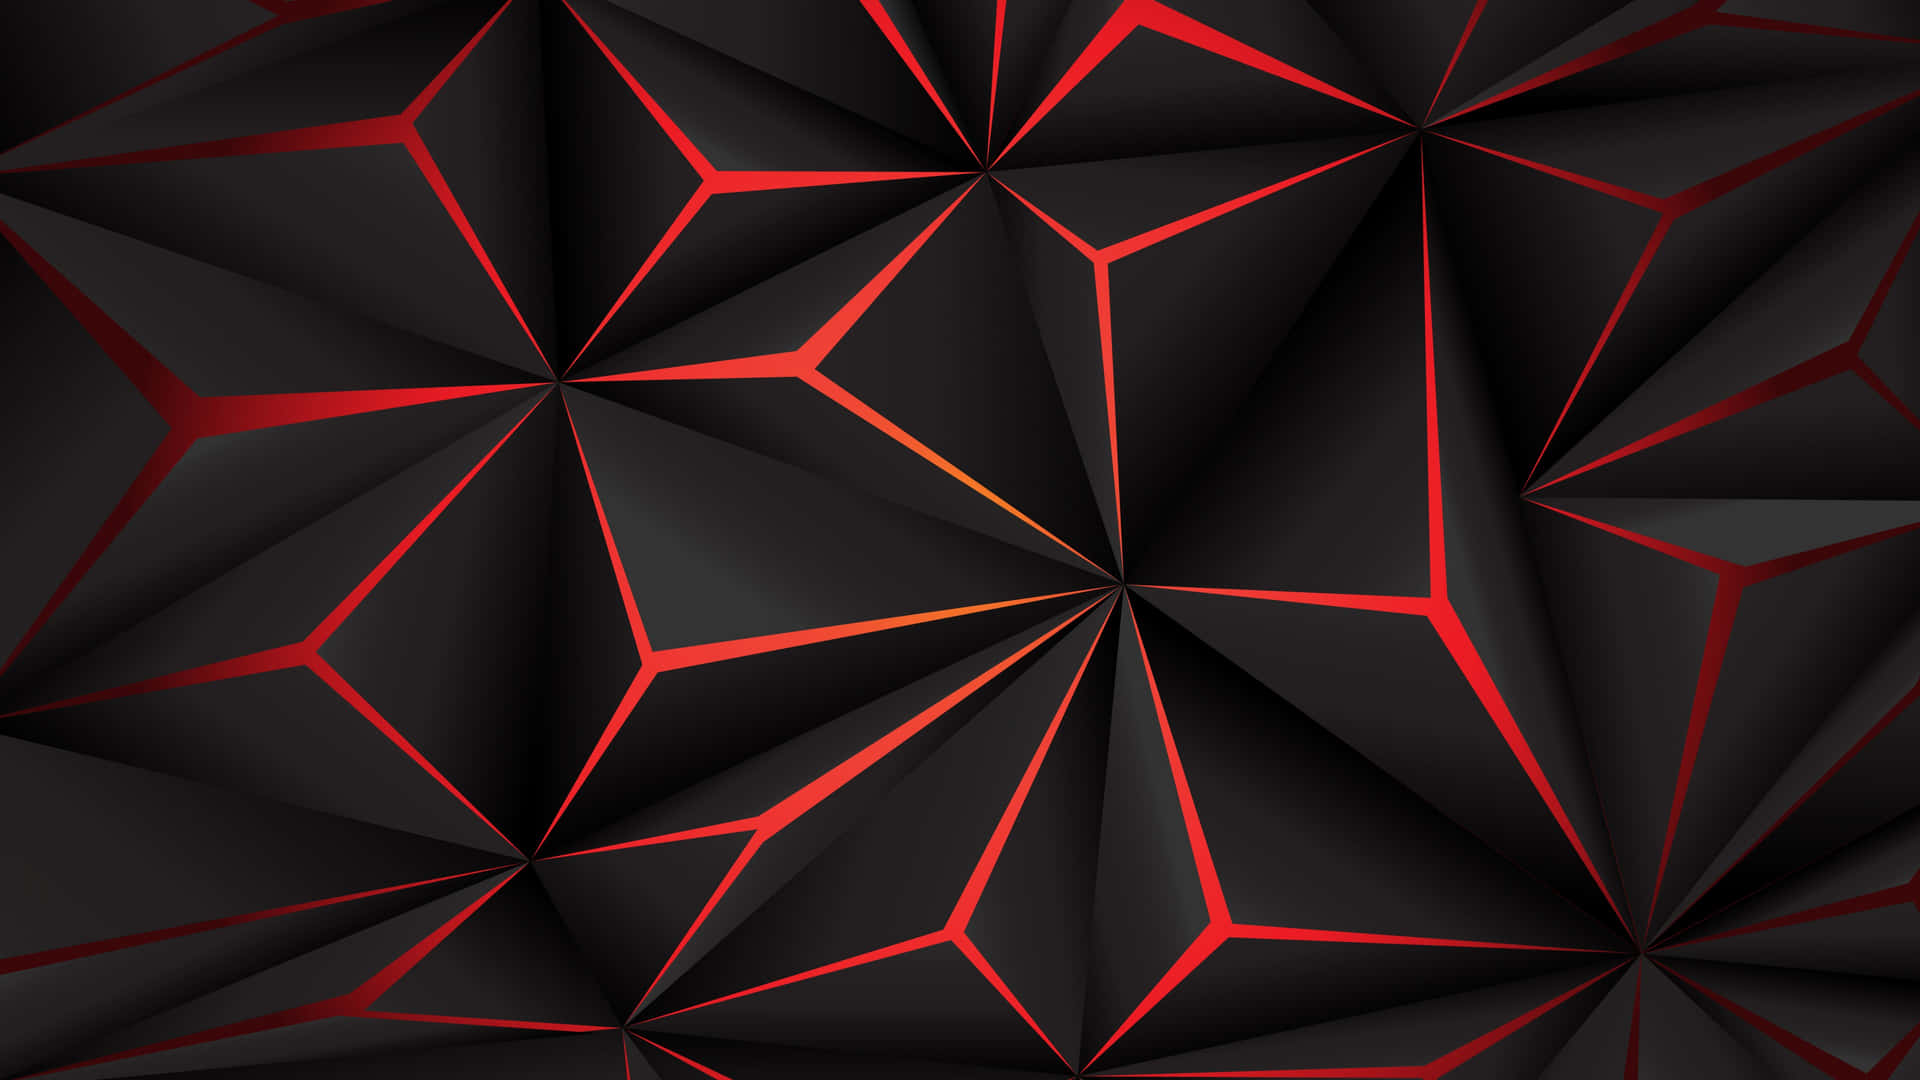 Låtdig Förtrollas Av Detta Geometriska Hexagonmönster. Wallpaper